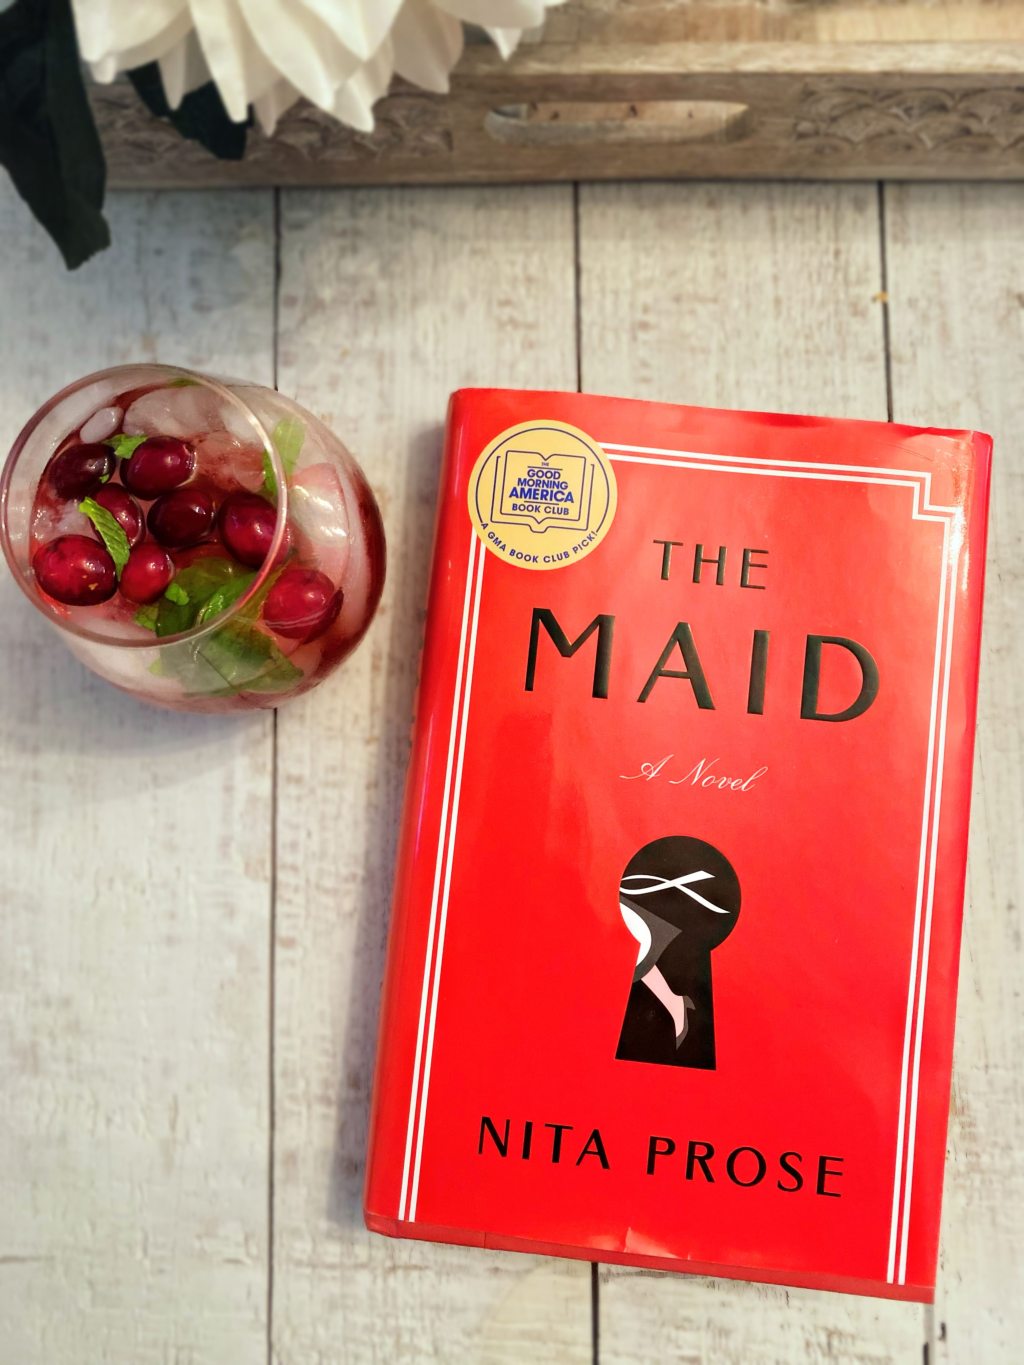 The Maid: a Novel by Nita Prose